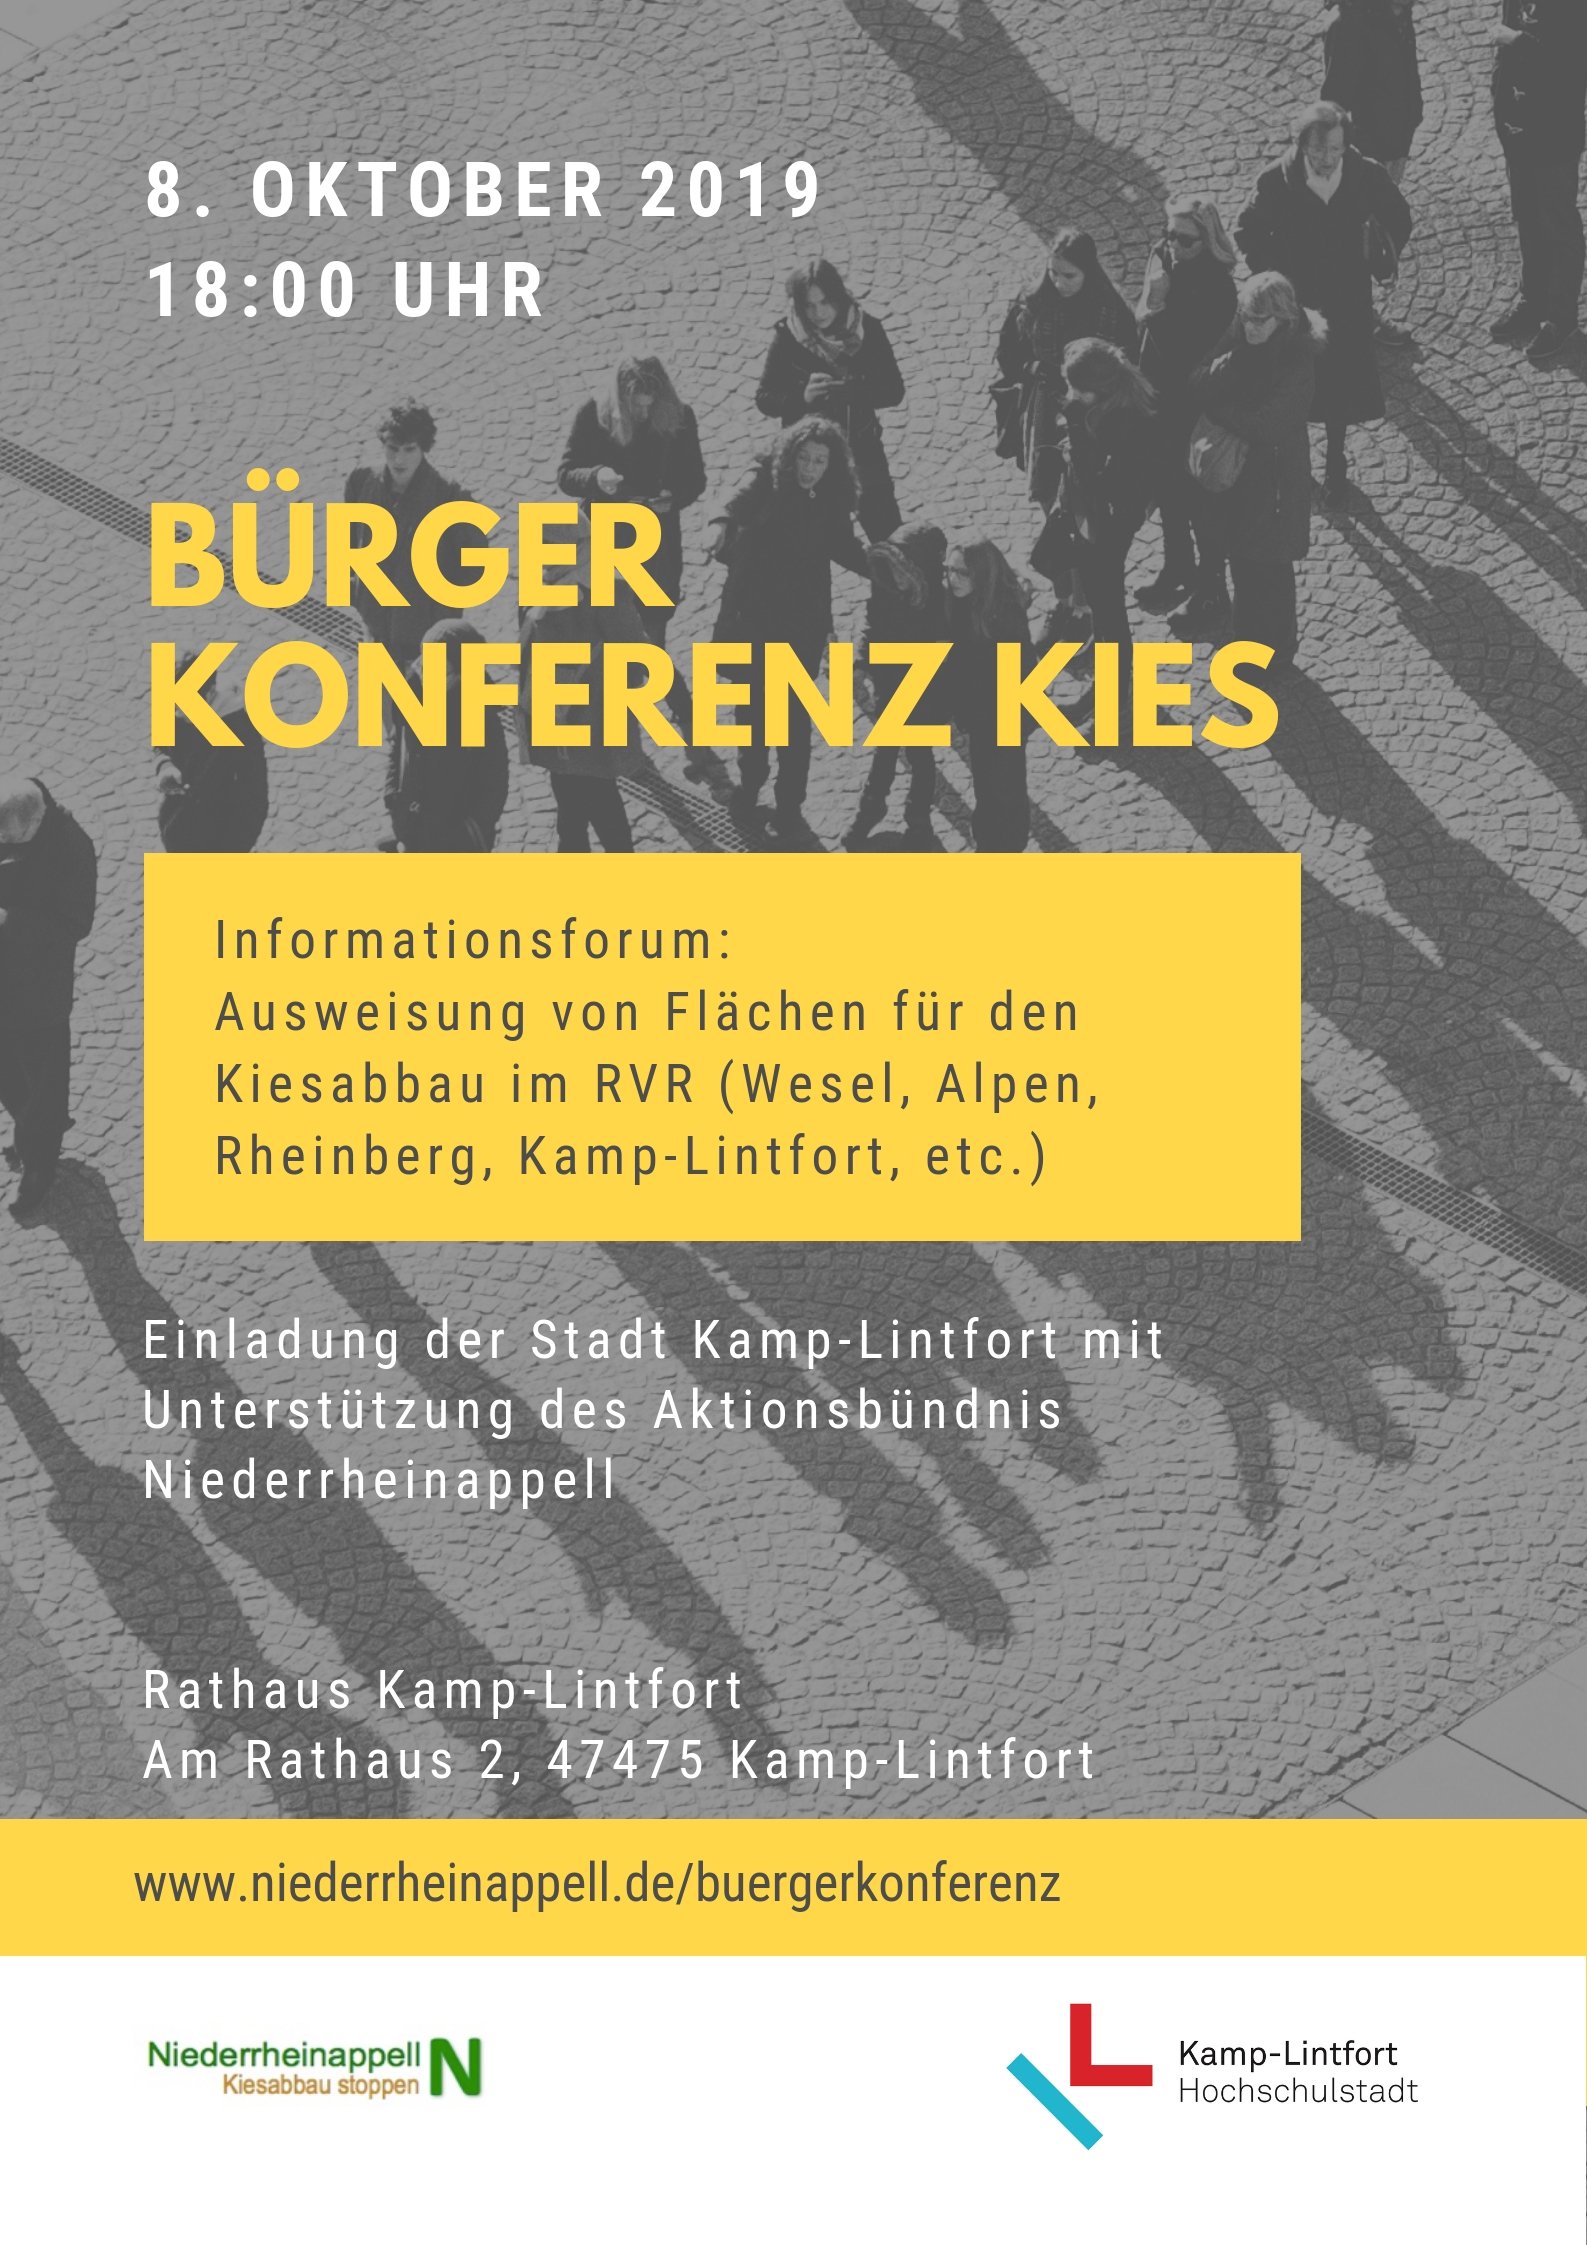 8. Oktober 2019 18 Uhr Einladung der Stadt Kamp-Lintfort mit Unterstützung des Aktionsbündnis Niederrheinappell zur Bürger Konferenz Kies im Kamp-Lintforter Rathaus. Es geht um den Kiesabbau im RVR (Wesel, Alpen, Rheinberg, Kamp-Lintfort etc.). 